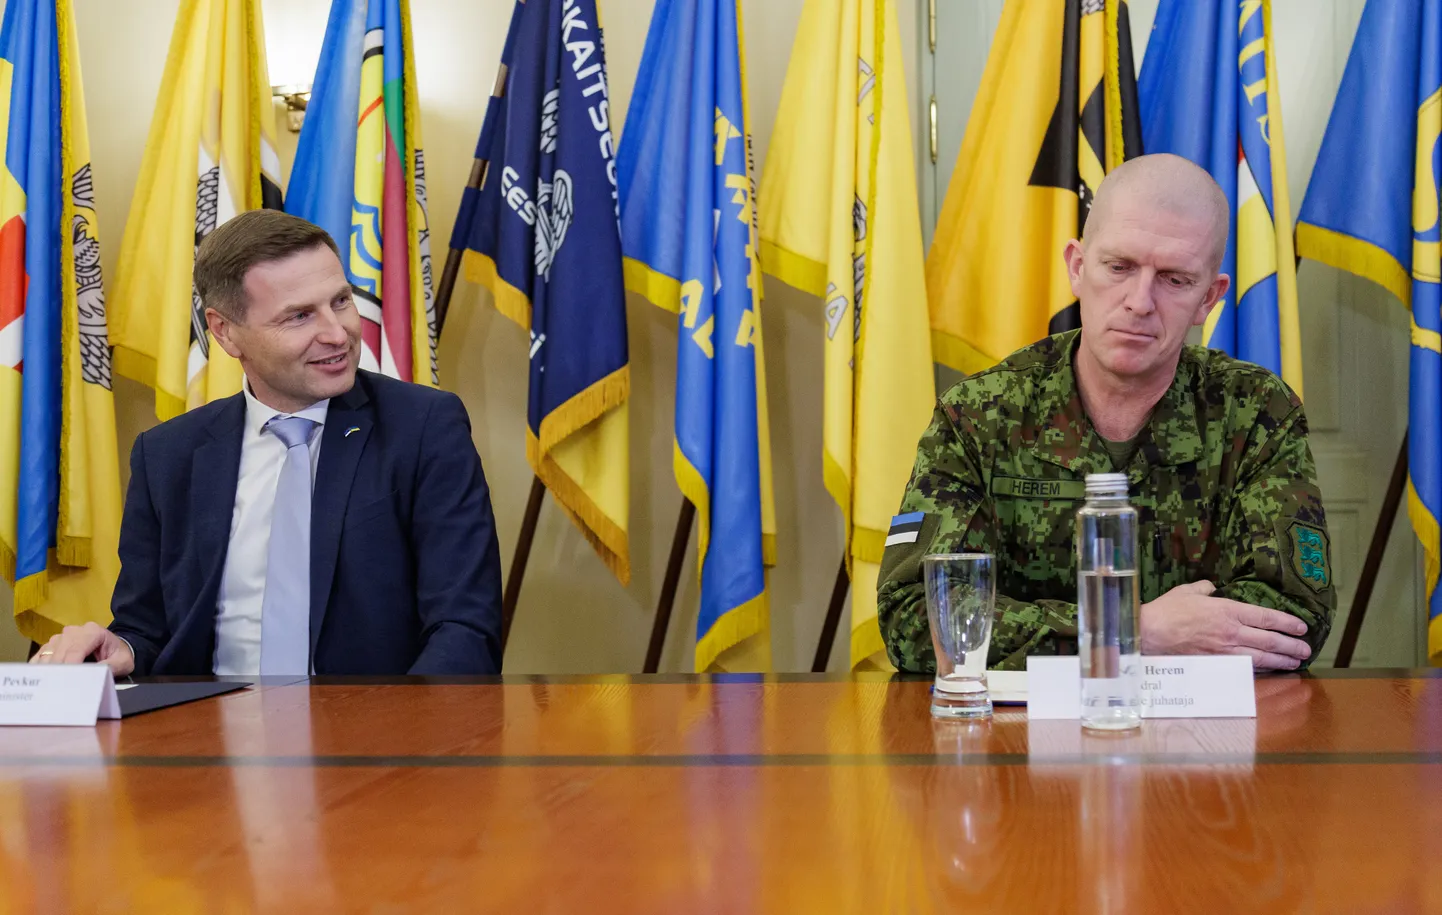 Глава Сил обороны генерал Мартин Херем (справа) в конце прошлого года неожиданно подал министру обороны Ханно Певкуру (слева) заявление об отставке, тем самым потеряв инициативу в назначении преемника.